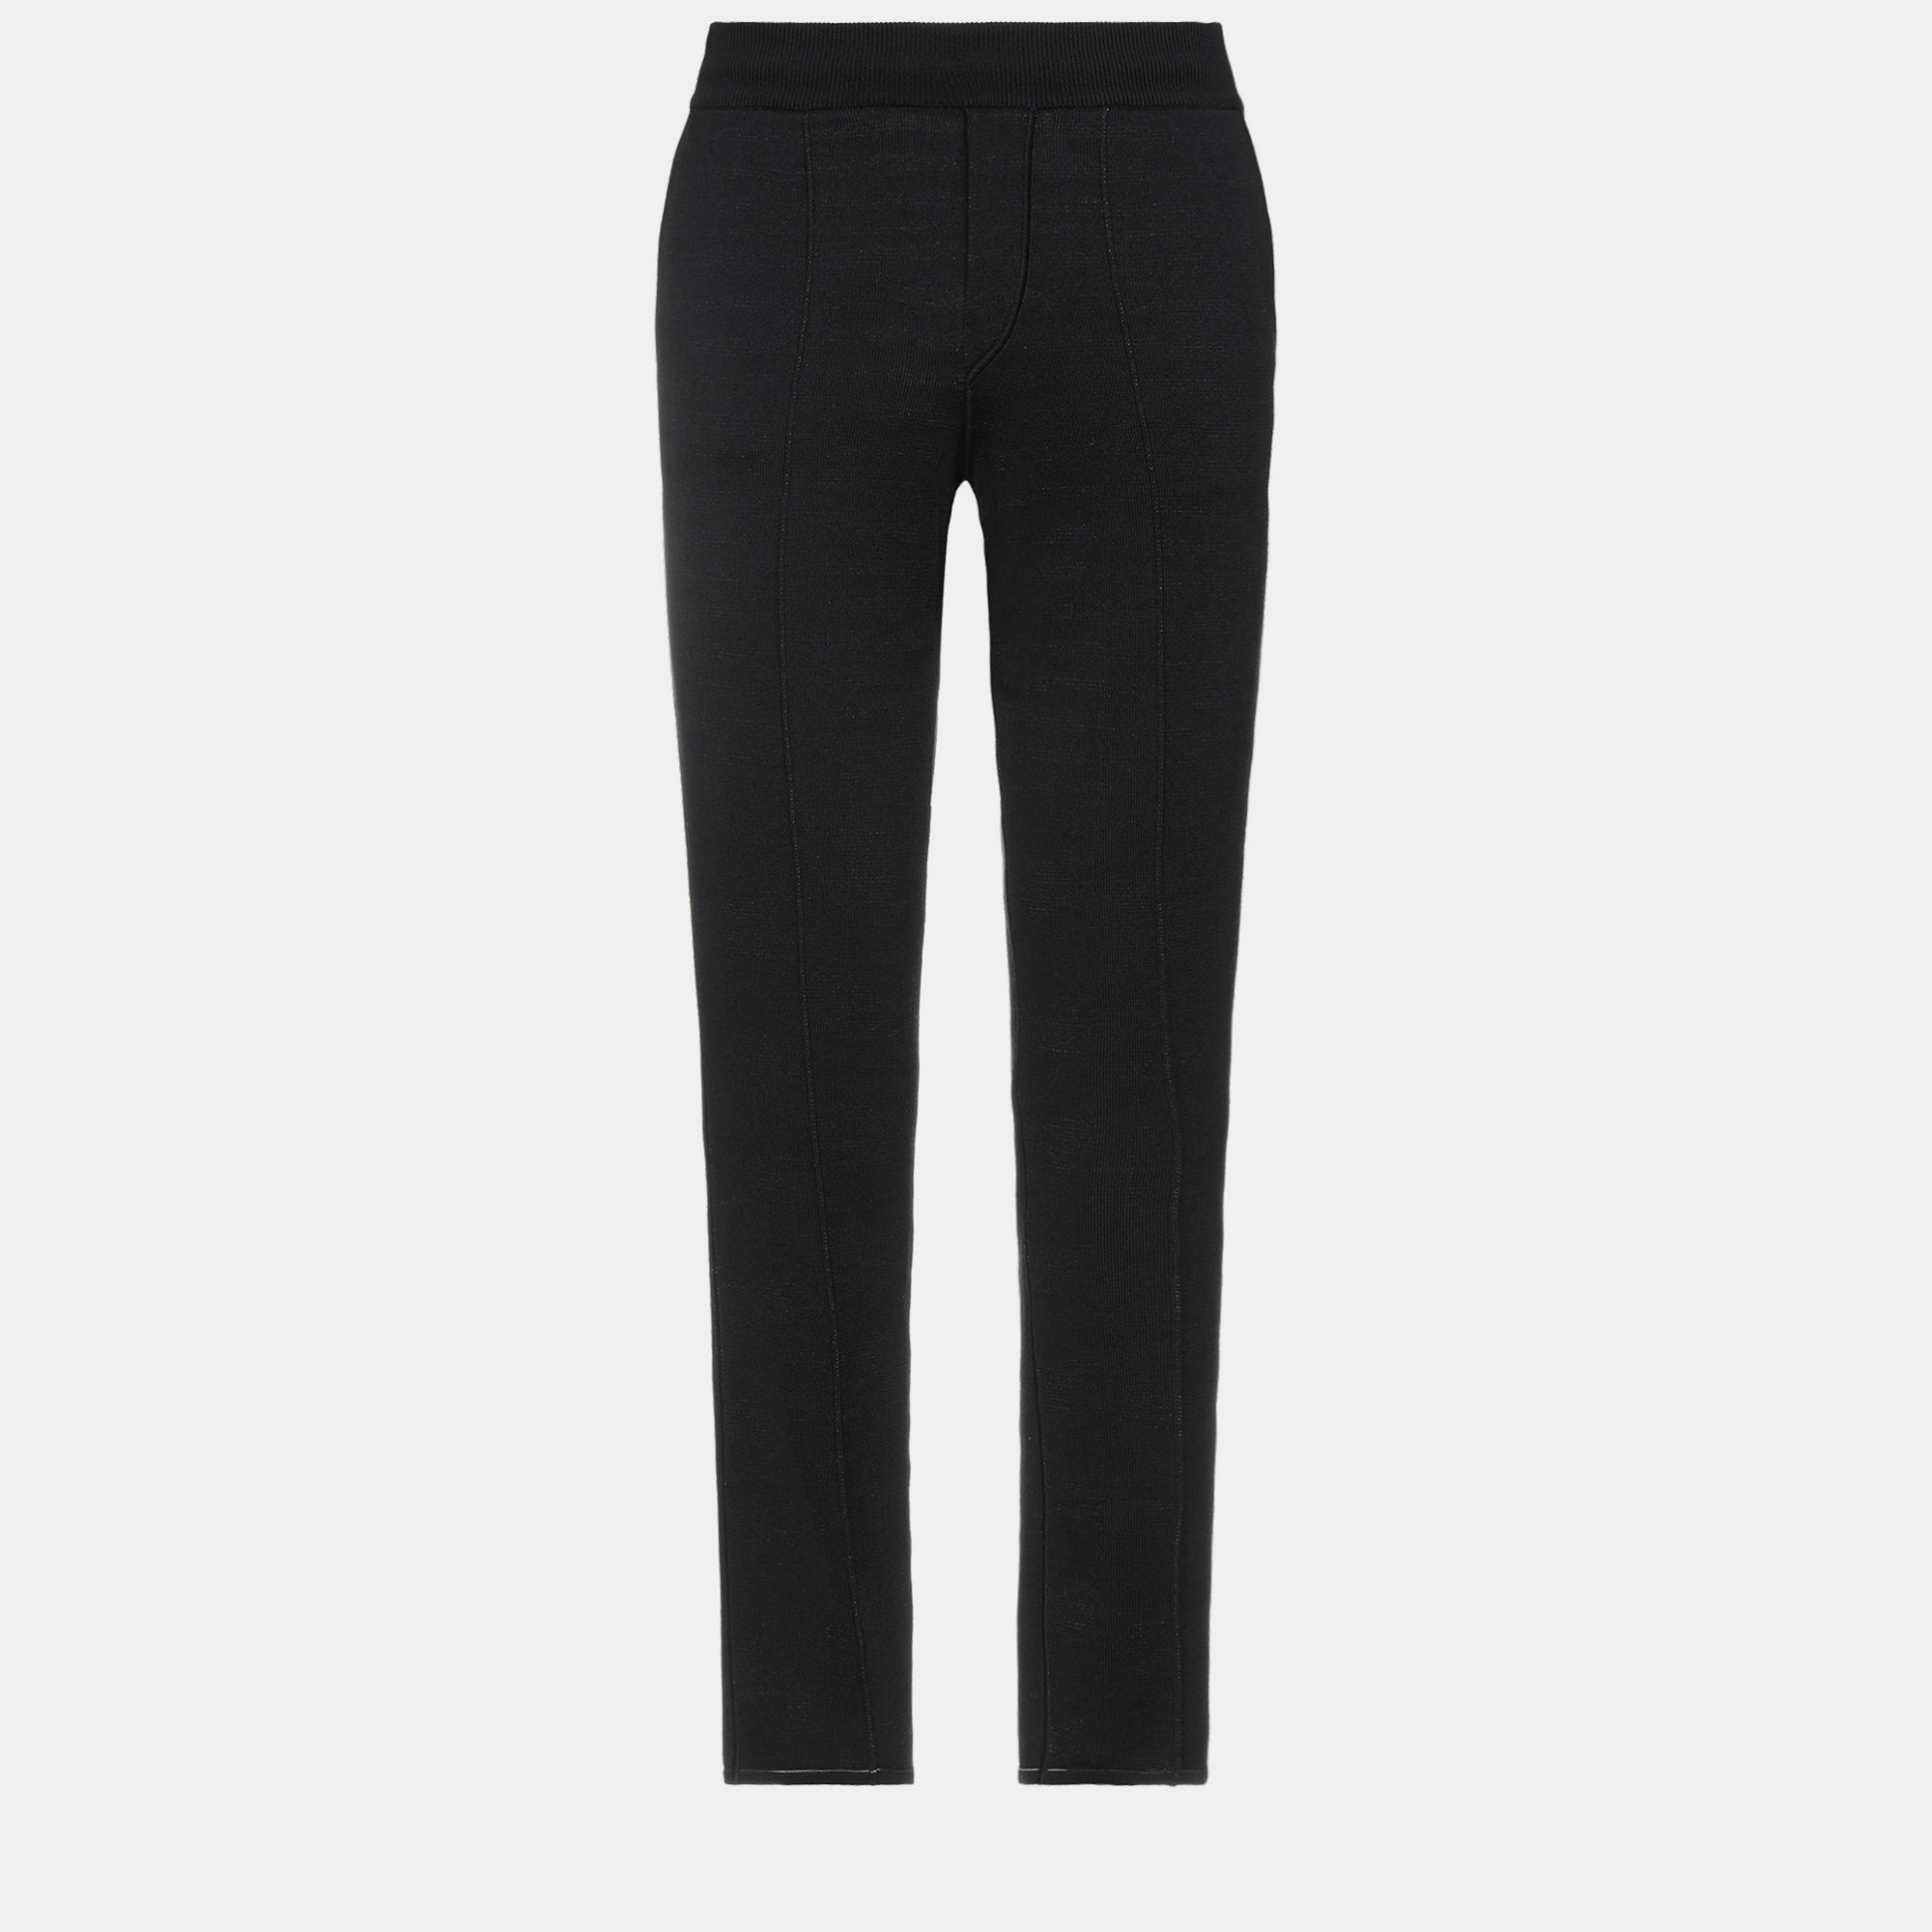 Missoni black wool tapered trousers l (it 50)